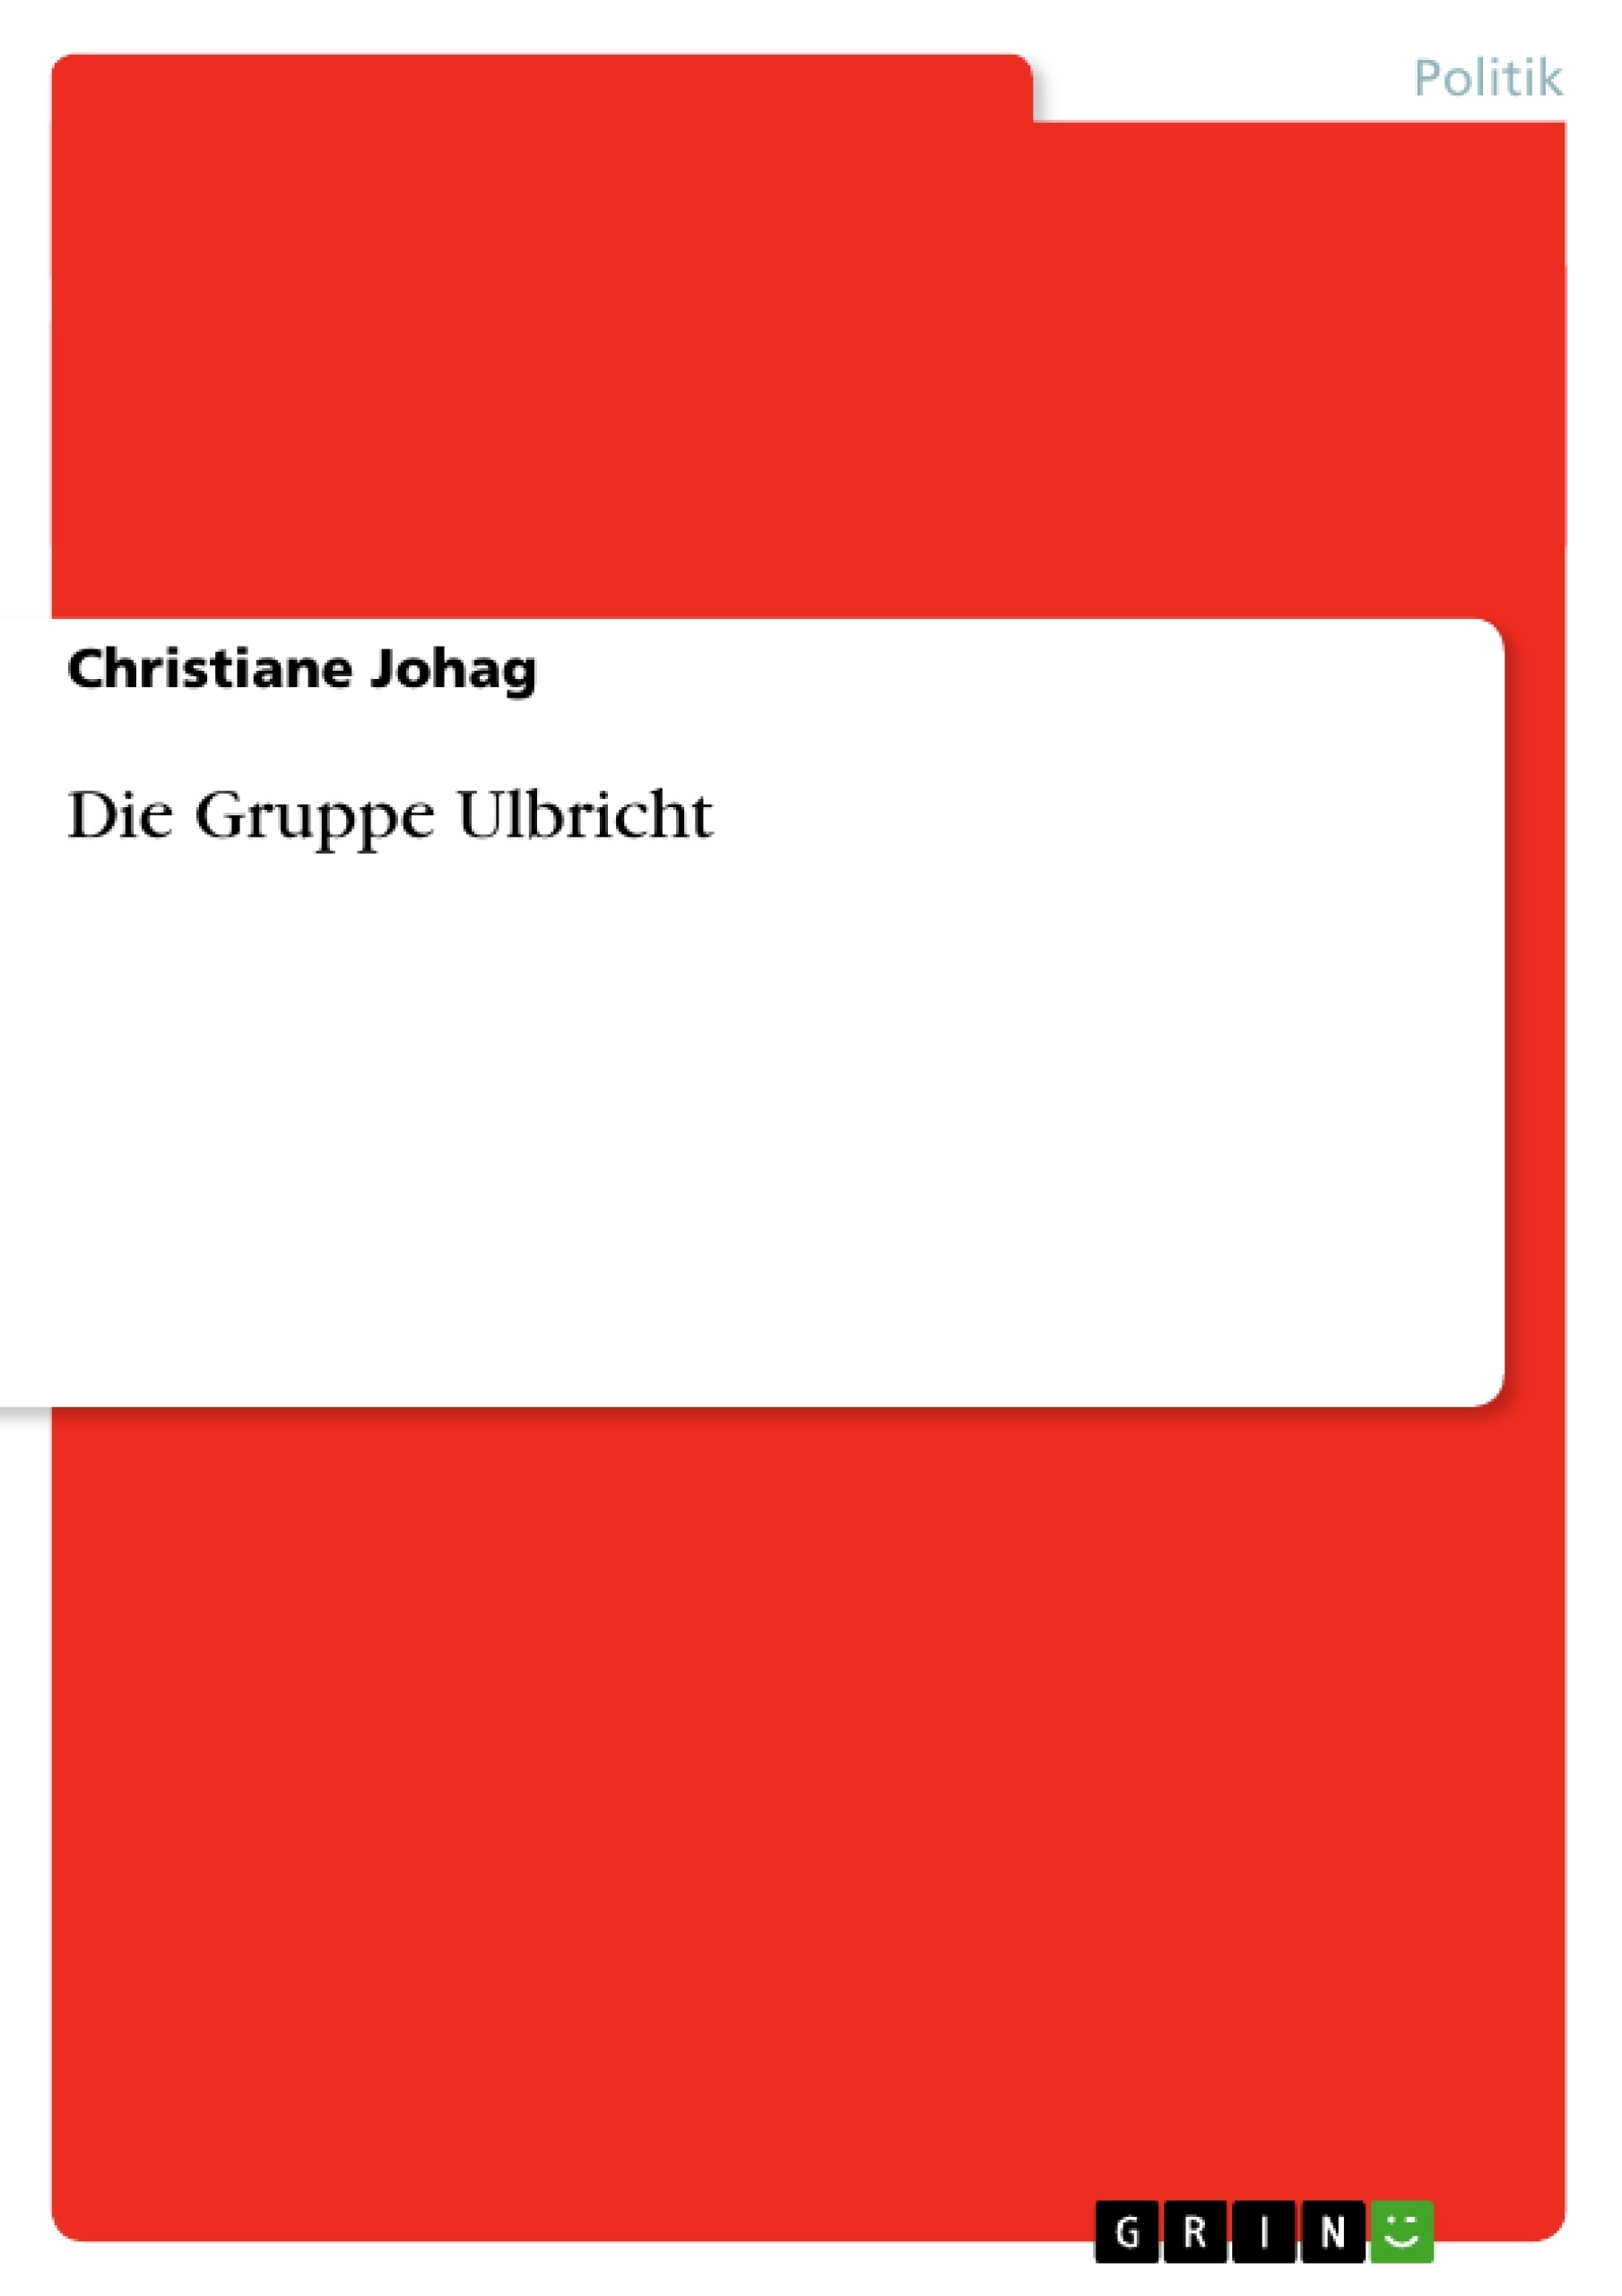 Título: Die Gruppe Ulbricht